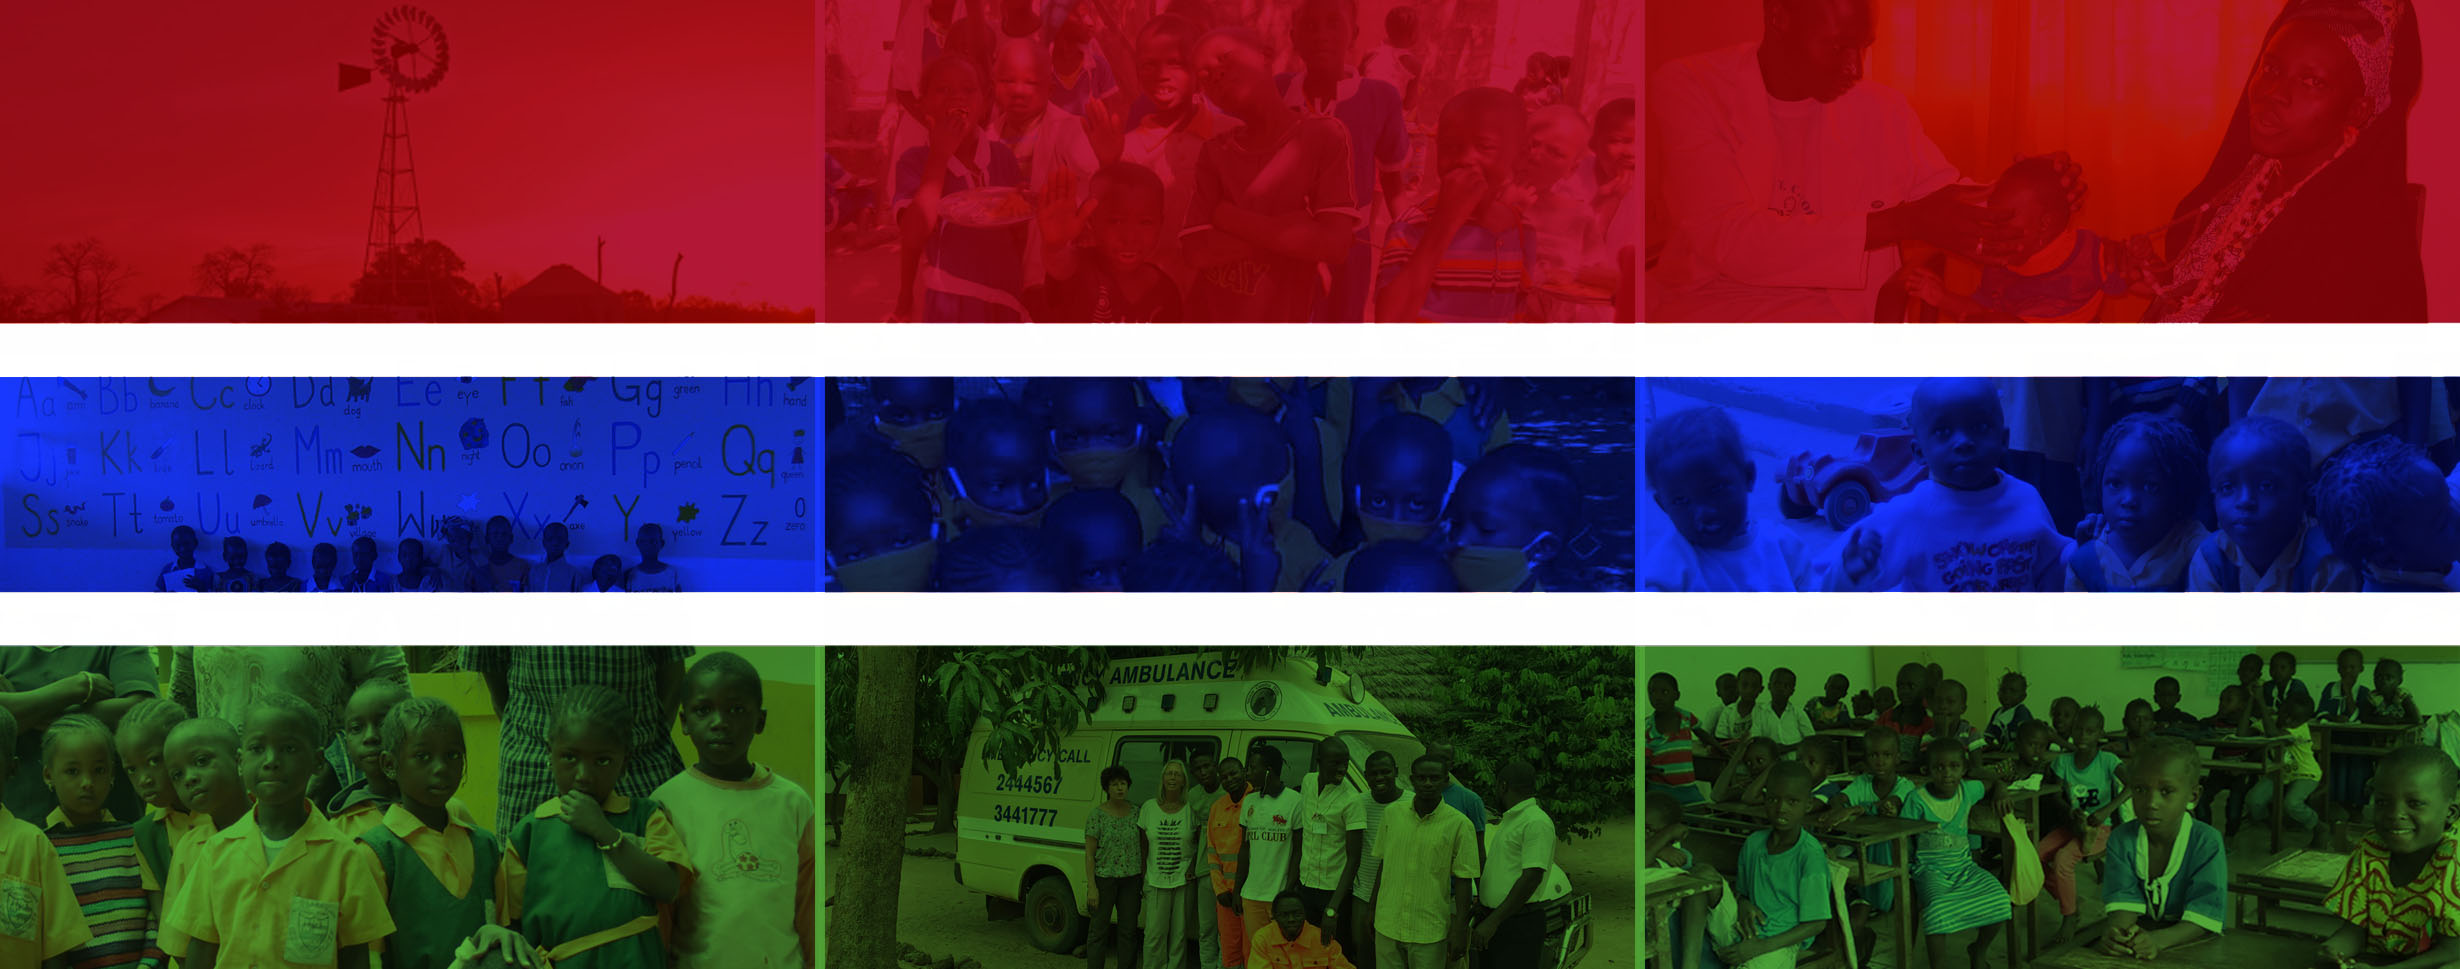 Eine Fotomontage mit der Flagge von Gambia